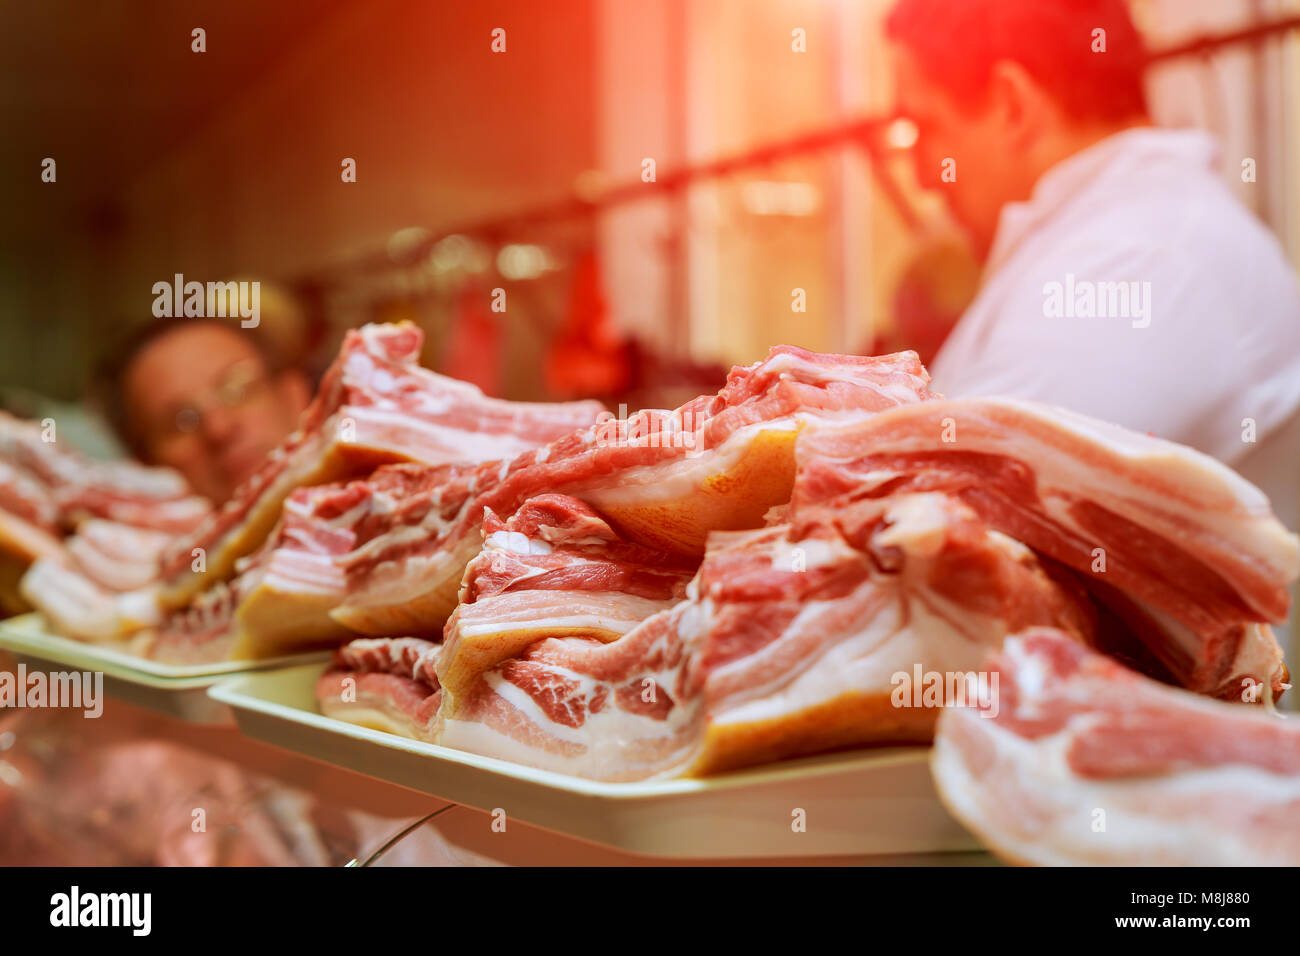 Fleisch - Verpackungsanlage Wurstwaren Wurst Würstchen forcemeat Fleisch Schwein Fleisch Knochen Rindfleisch mit Knochen Produktion Metzgerei Schmalz Schweinekeule zerlegtes Fleisch Stockfoto